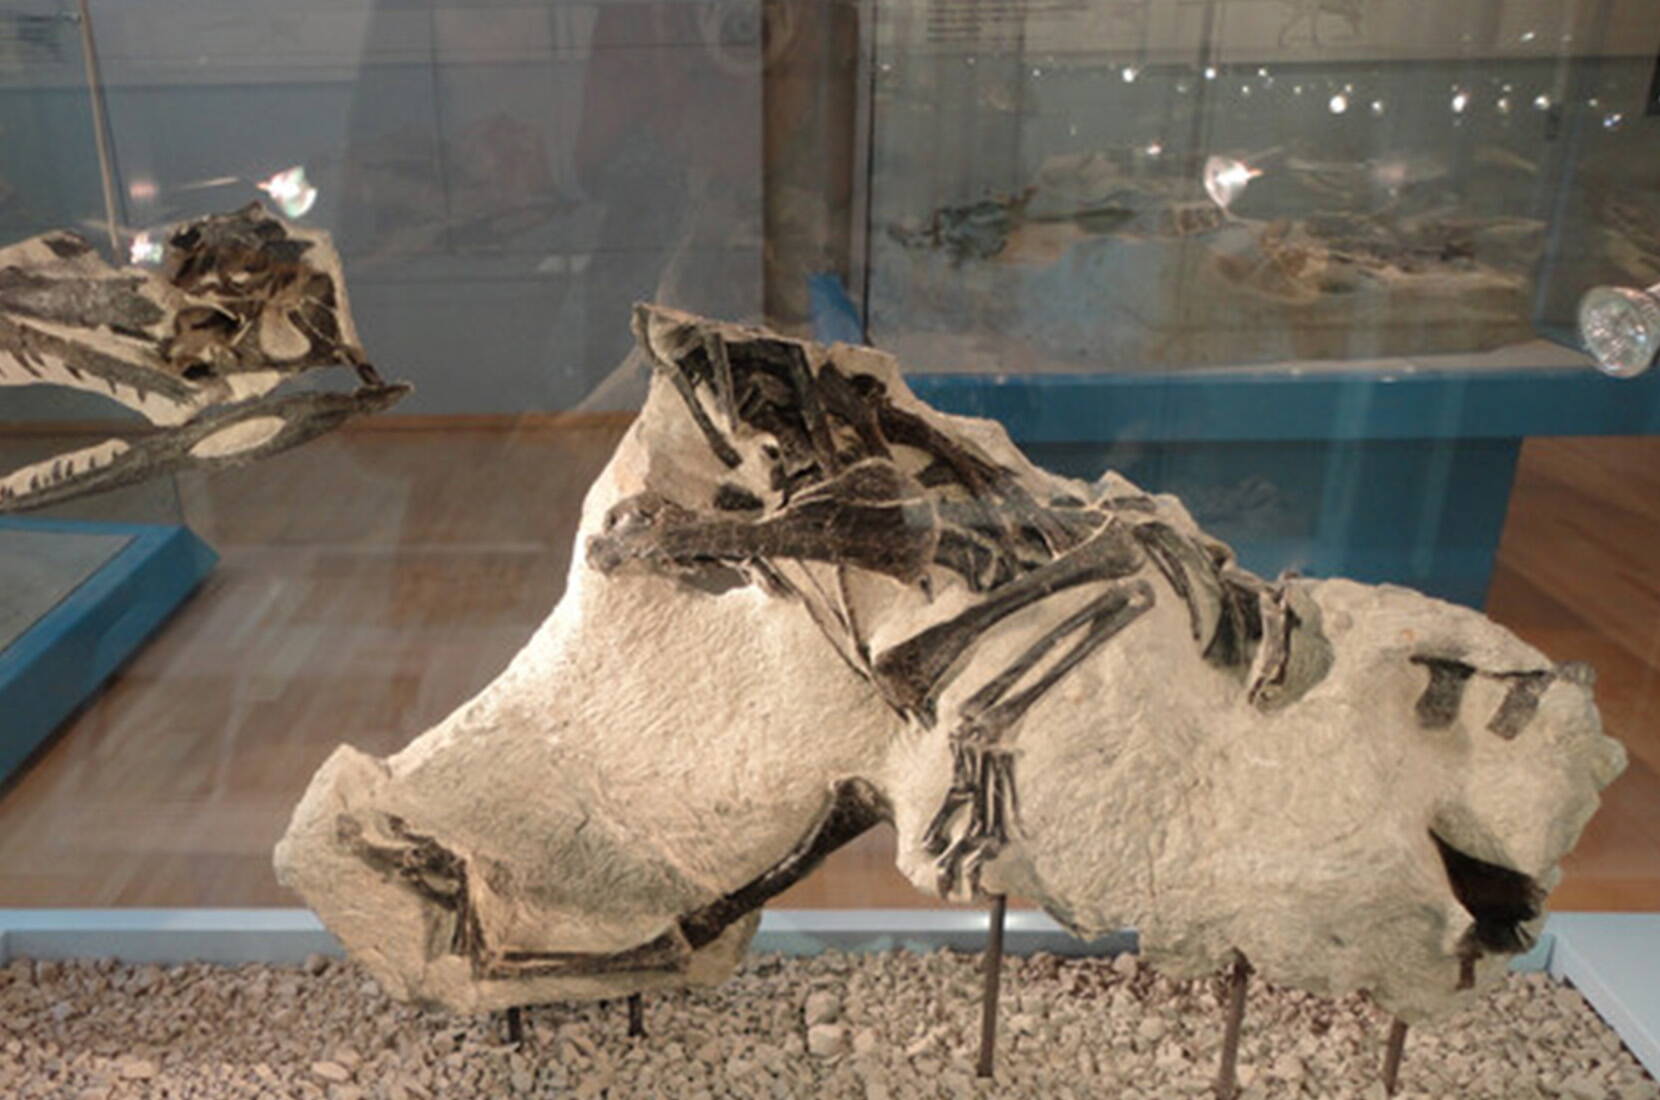 Buono d'ingresso gratuito per il museo dei dinosauri Frick. Scarica il tuo voucher per l'ingresso gratuito e preparati per un viaggio nel passato. Il museo mostra da vicino le ossa dei cosiddetti plateosauri del periodo Triassico, compreso lo scheletro di dinosauro più completo mai trovato in Svizzera.